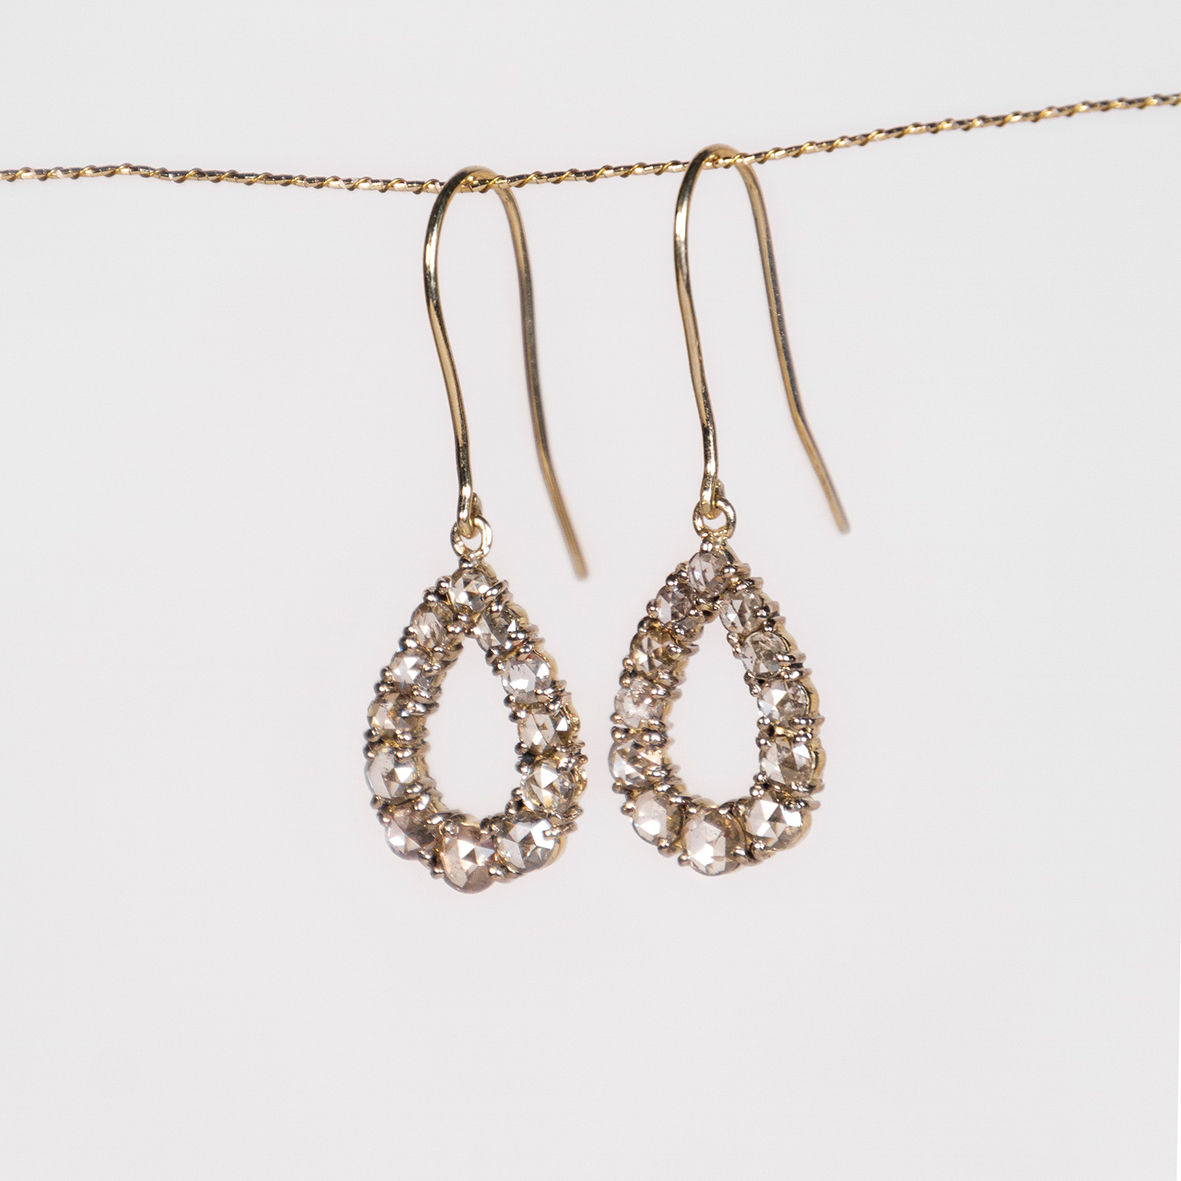 2. Drop diamond earrings_f2